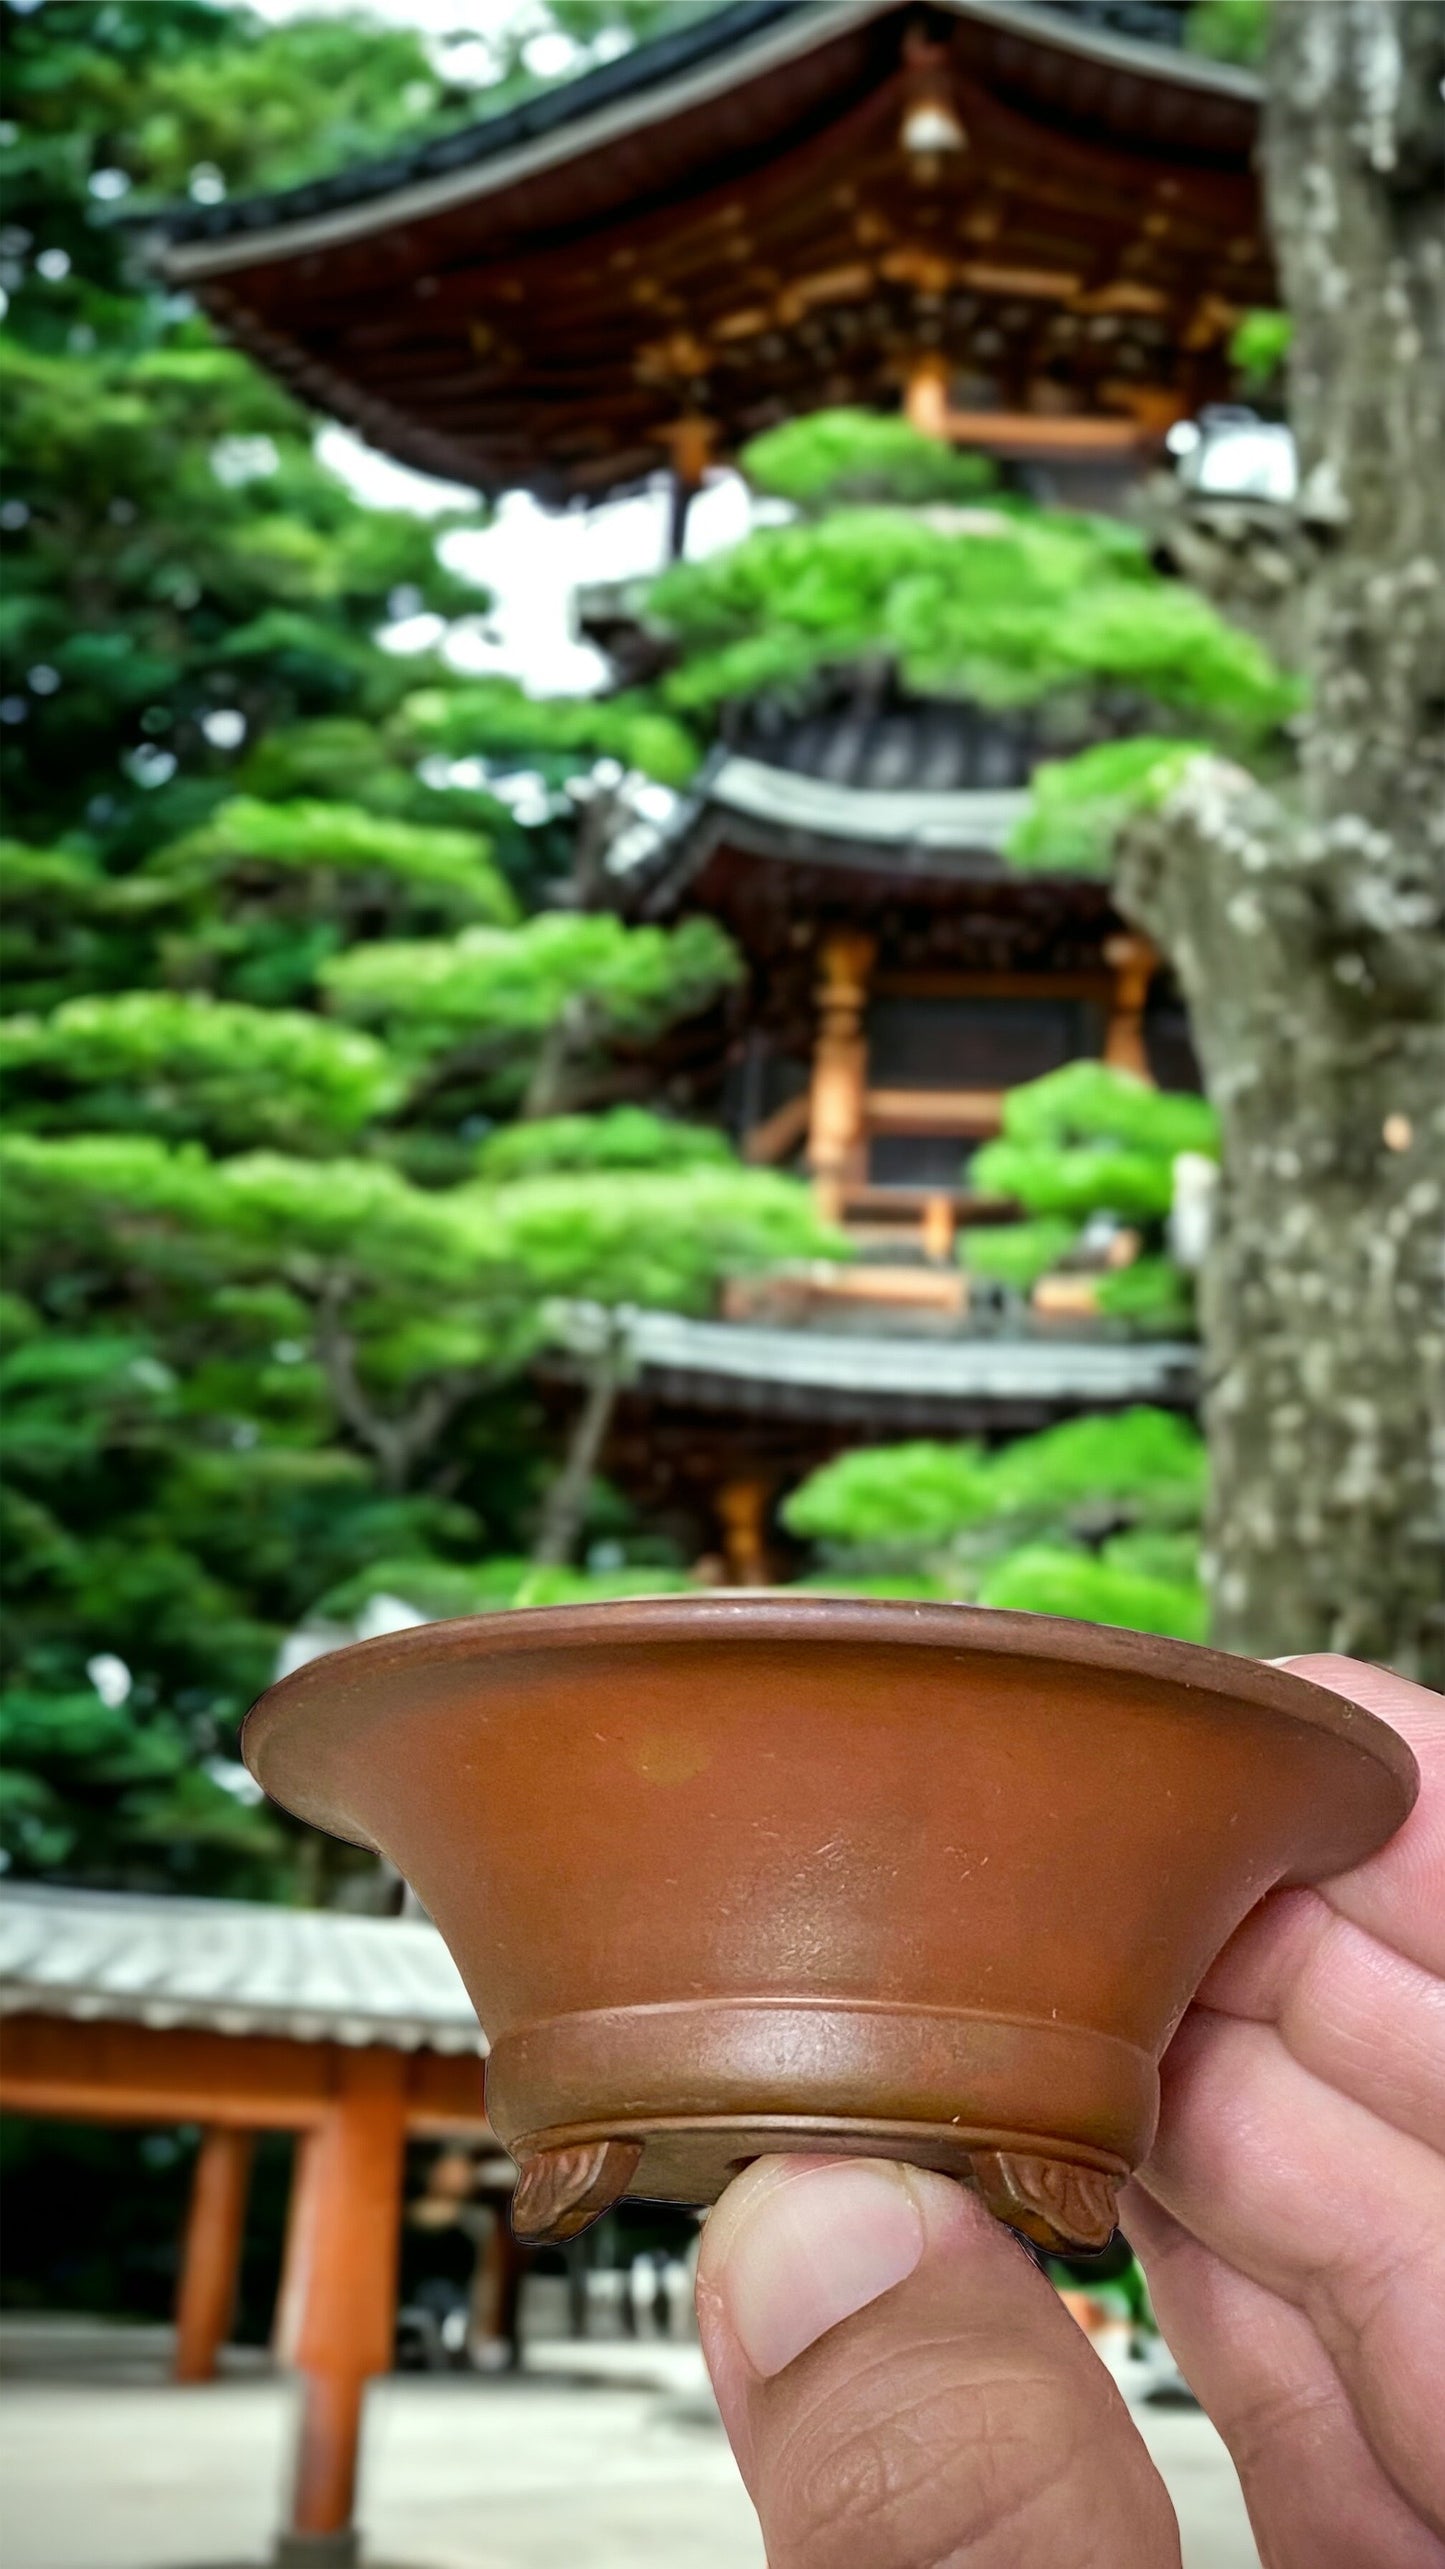 Senkouen - Quite Old Footed Bowl Bonsai or Accent Pot